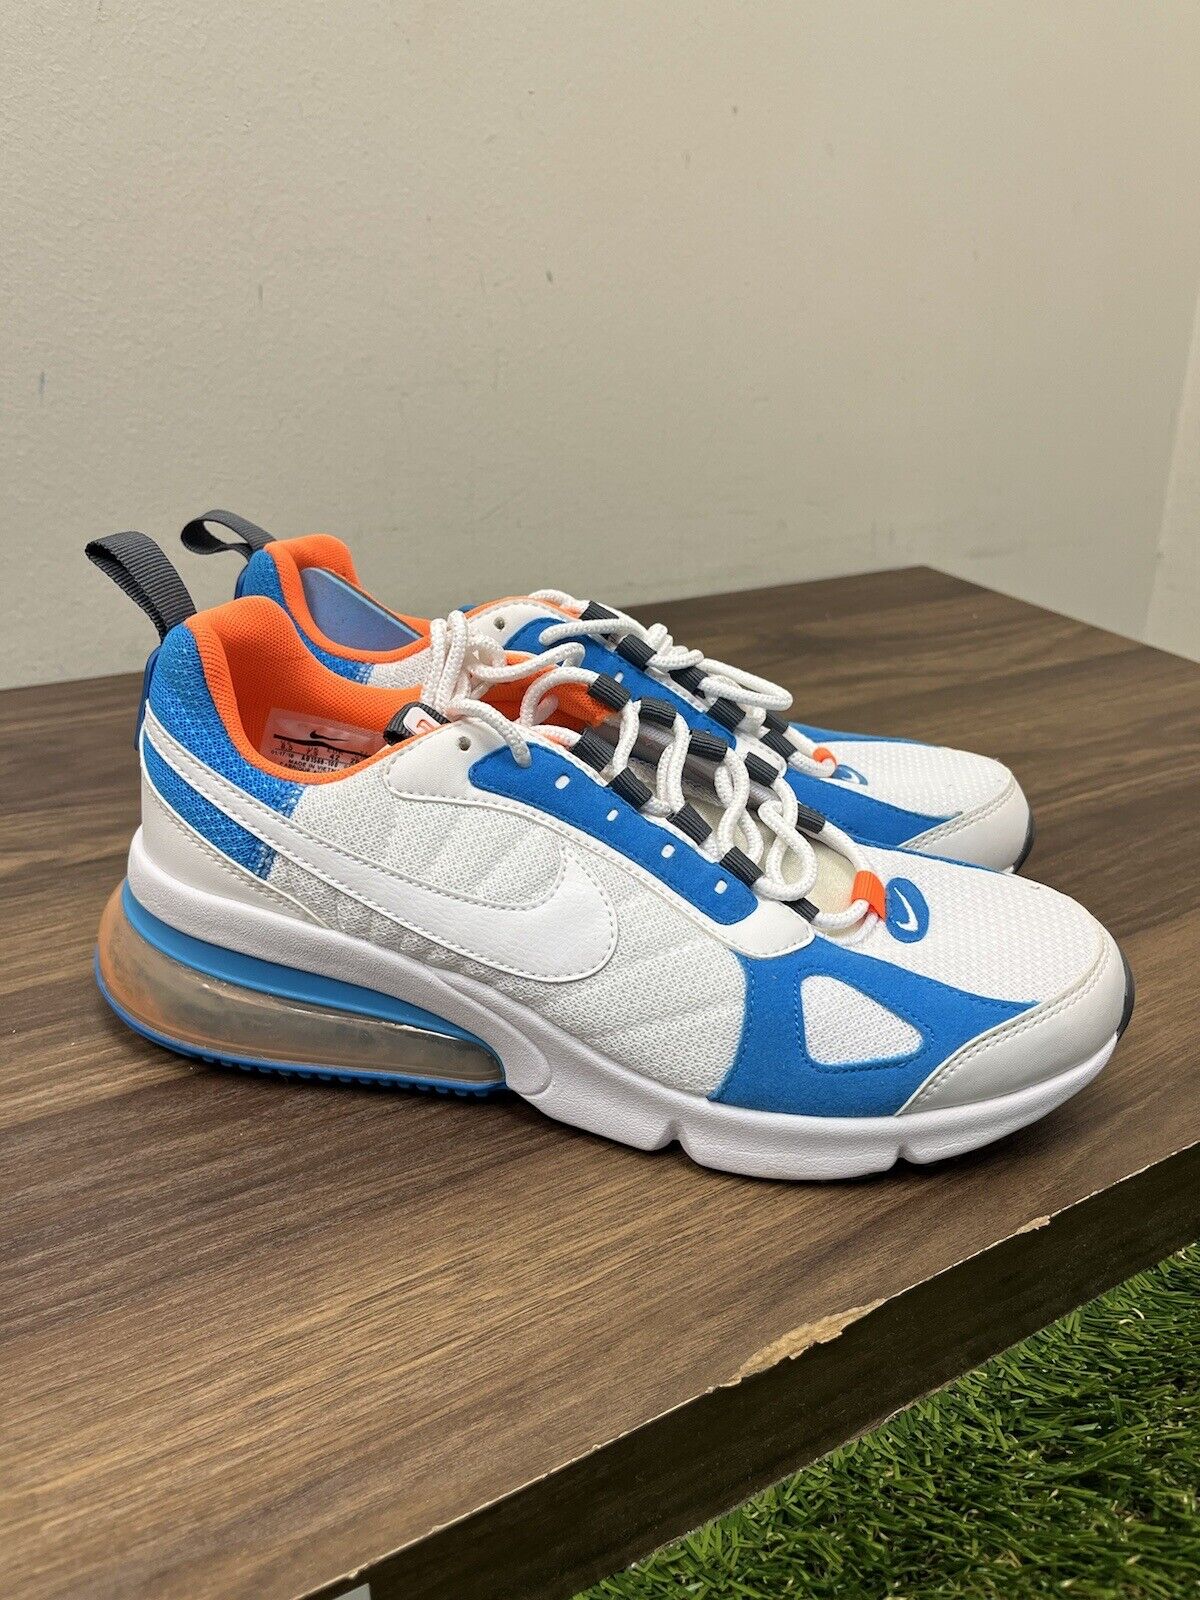 Nike Men’s Air Max 270 Futura Athletic Shoes White/Orange Size 8.5  AO1569-100